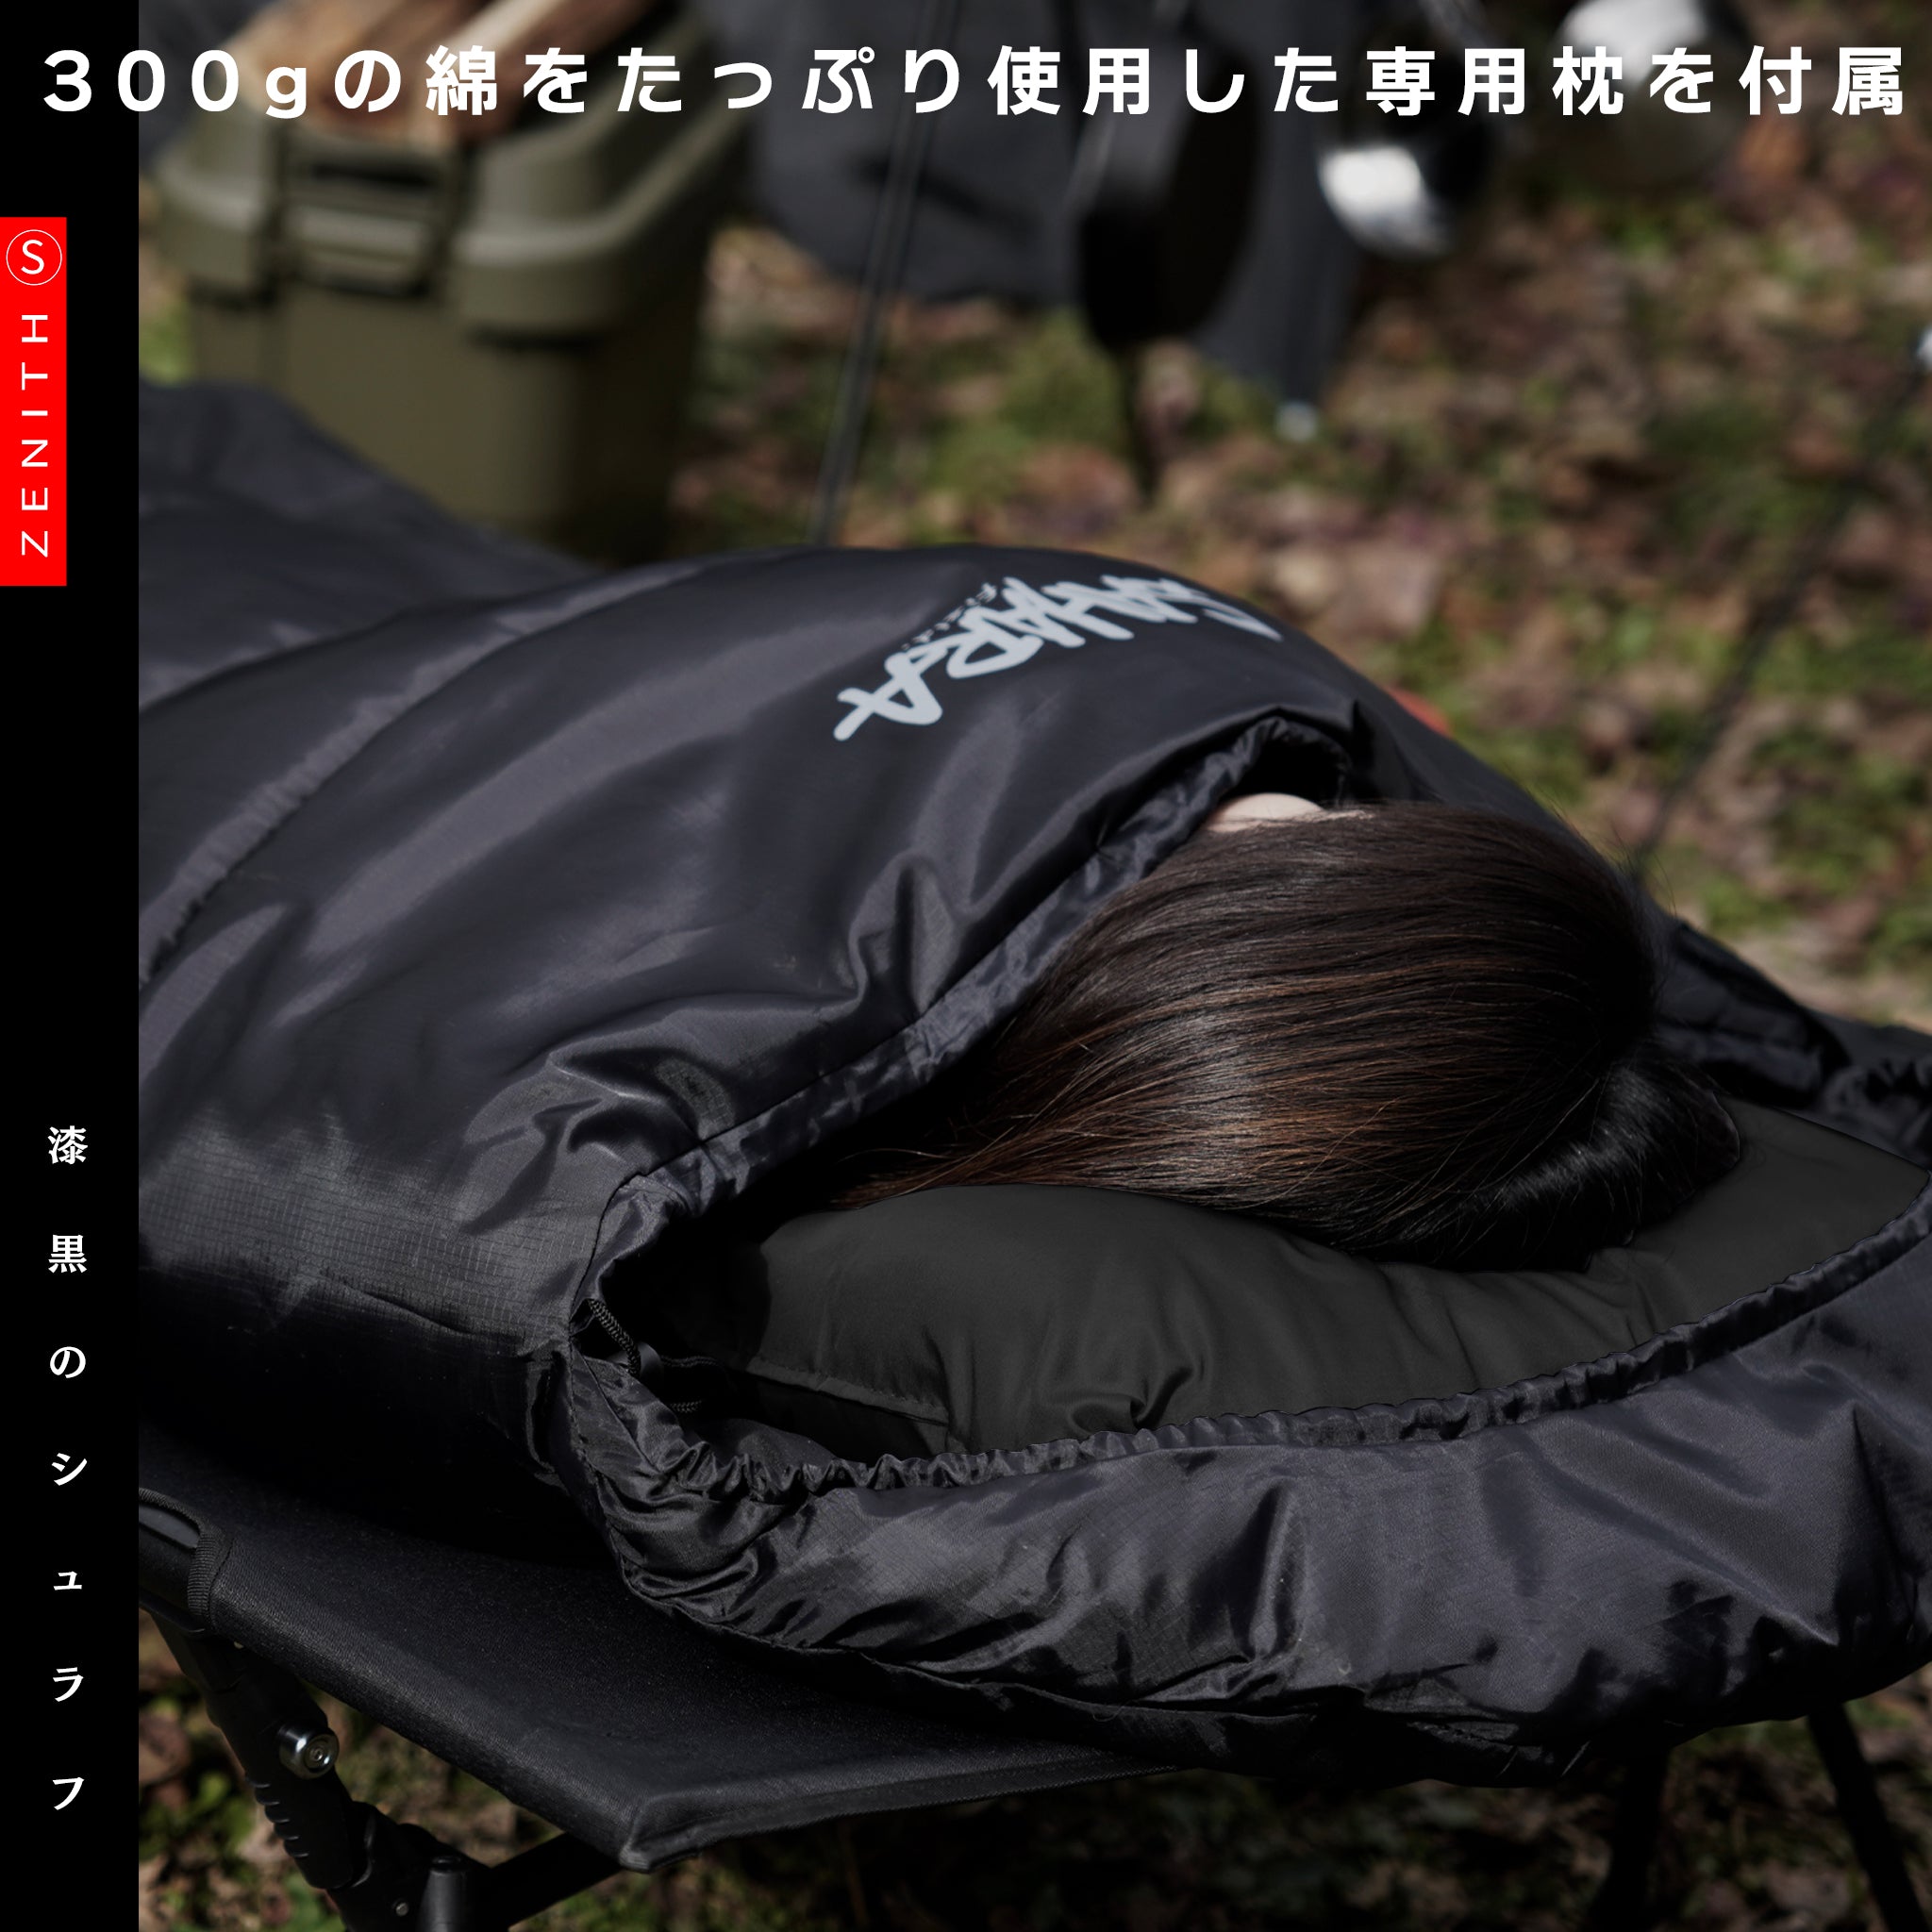 Bears Rock 寝袋 −30℃ 冬用 - アウトドア寝具